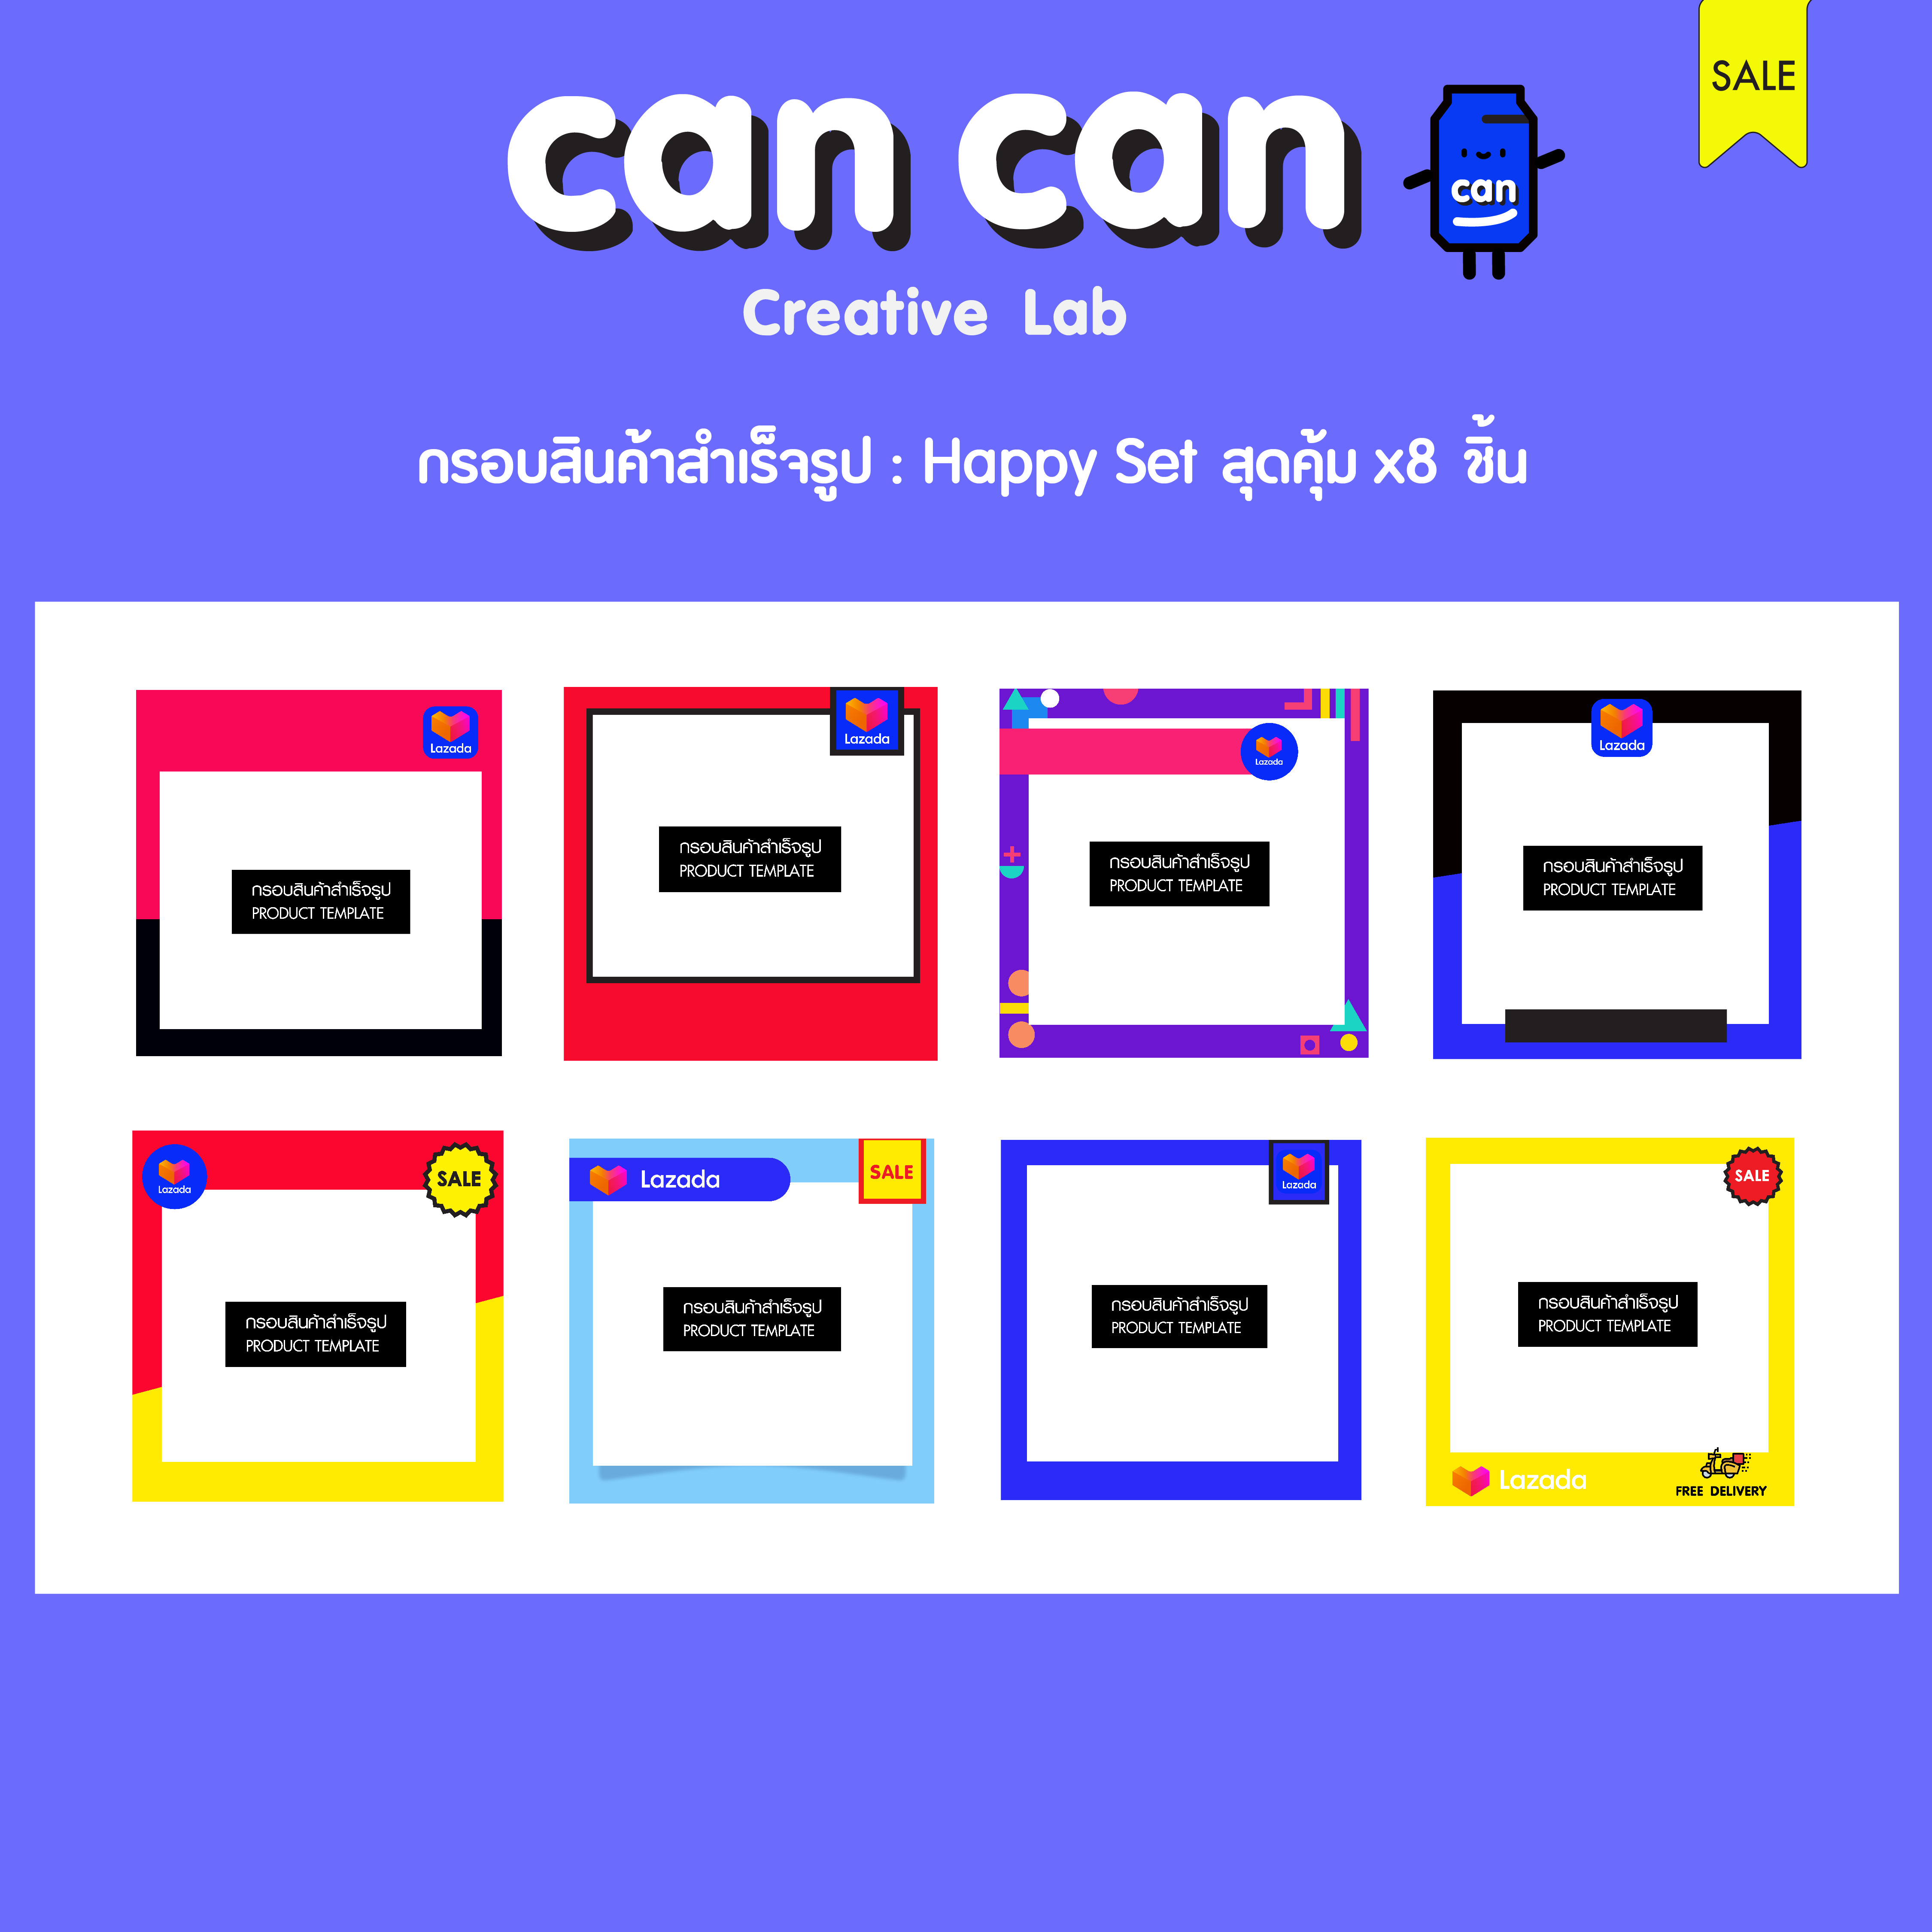 CanCan Creative Lab - กรอบสินค้าสำเร็จรูป Lazada - Happy Set x8 ชิ้น สุดคุ้ม  ราคาพิเศษ  (จัดส่งทางอีเมล)